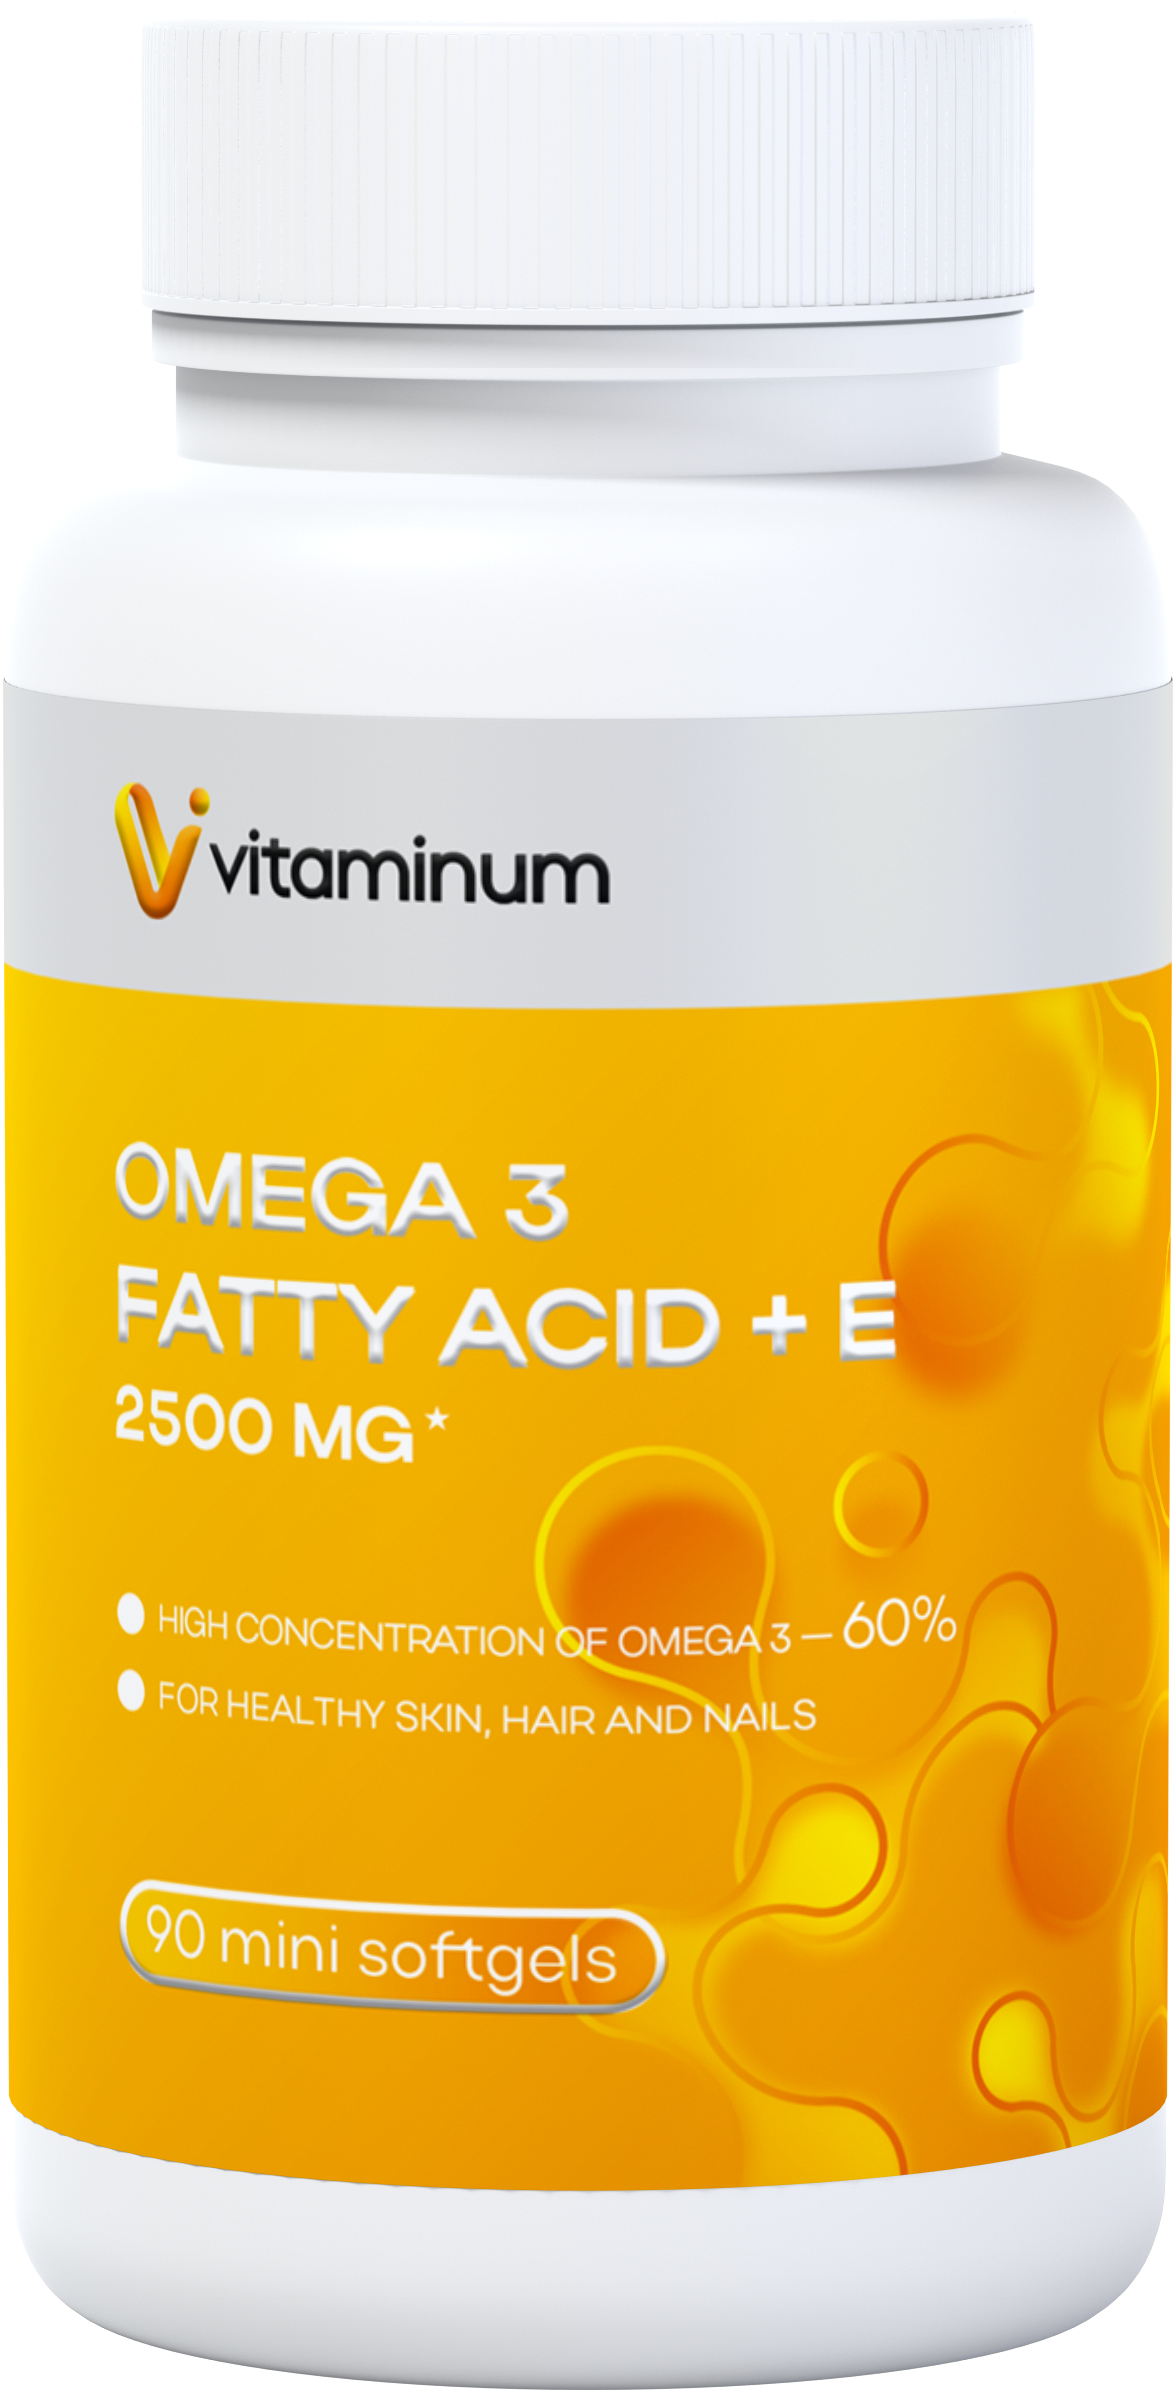  Vitaminum ОМЕГА 3 60% + витамин Е (2500 MG*) 90 капсул 700 мг   в Туймазах